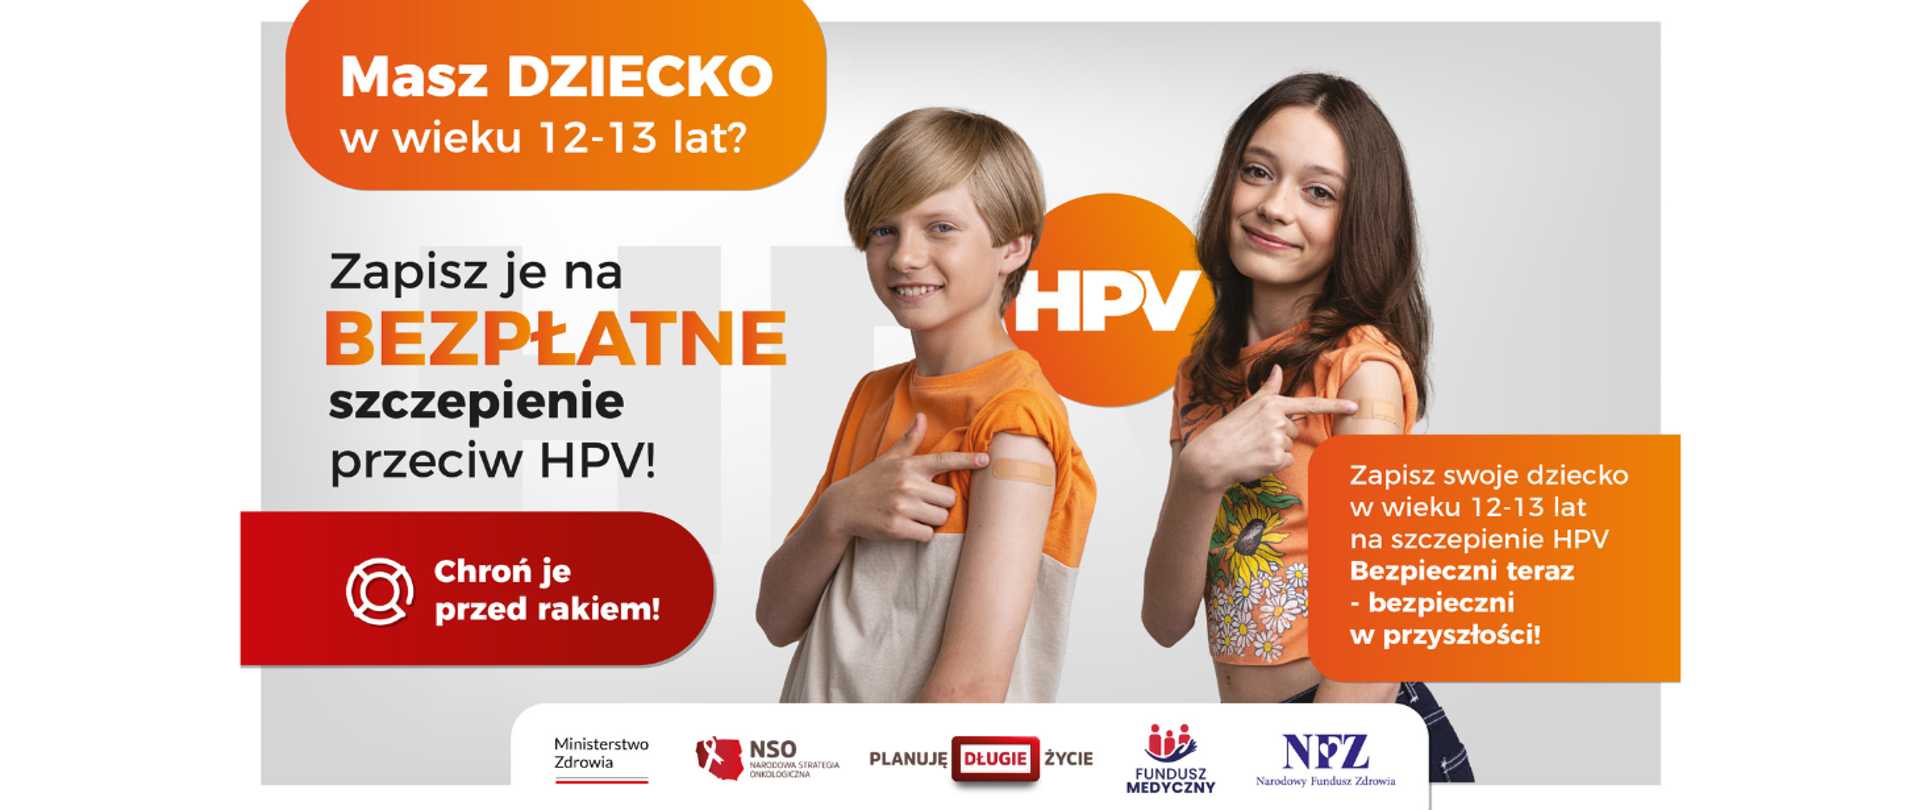 Grafika na temat szczepień przeciwko HPV.